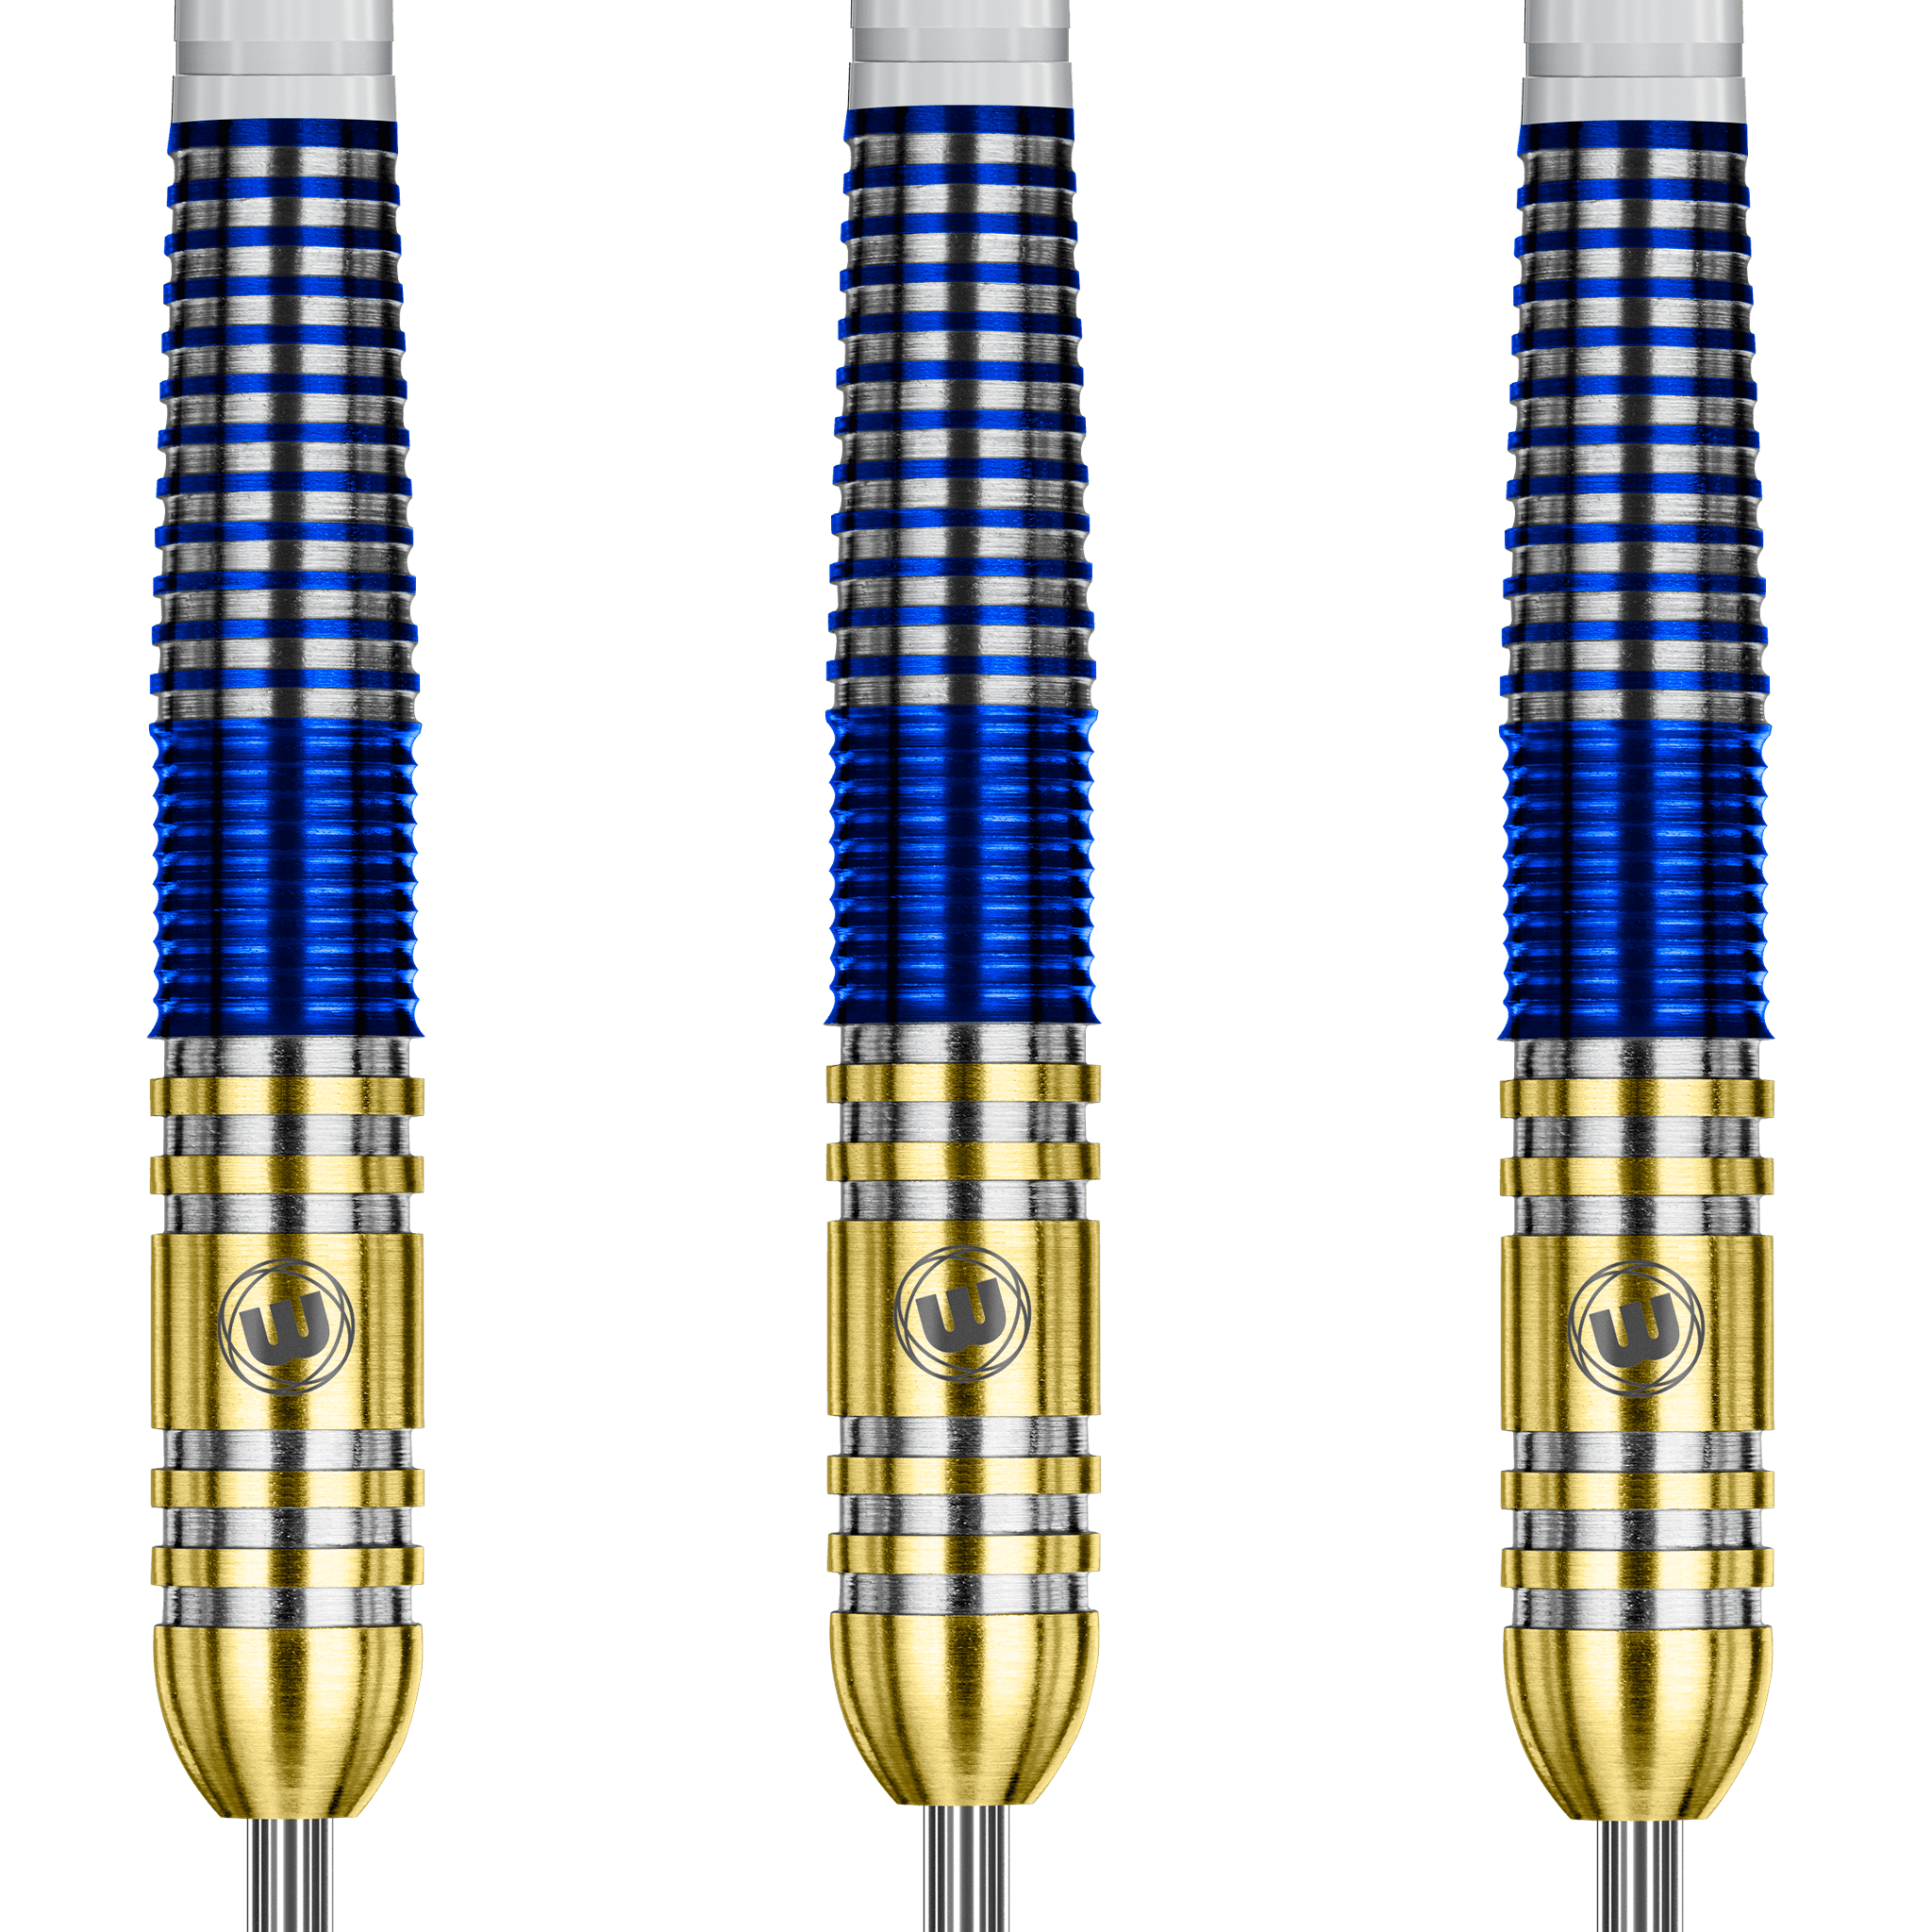 Winmau Steve Beaton Steel Tip Darts - 90% Tungsten - 22 Grams Darts